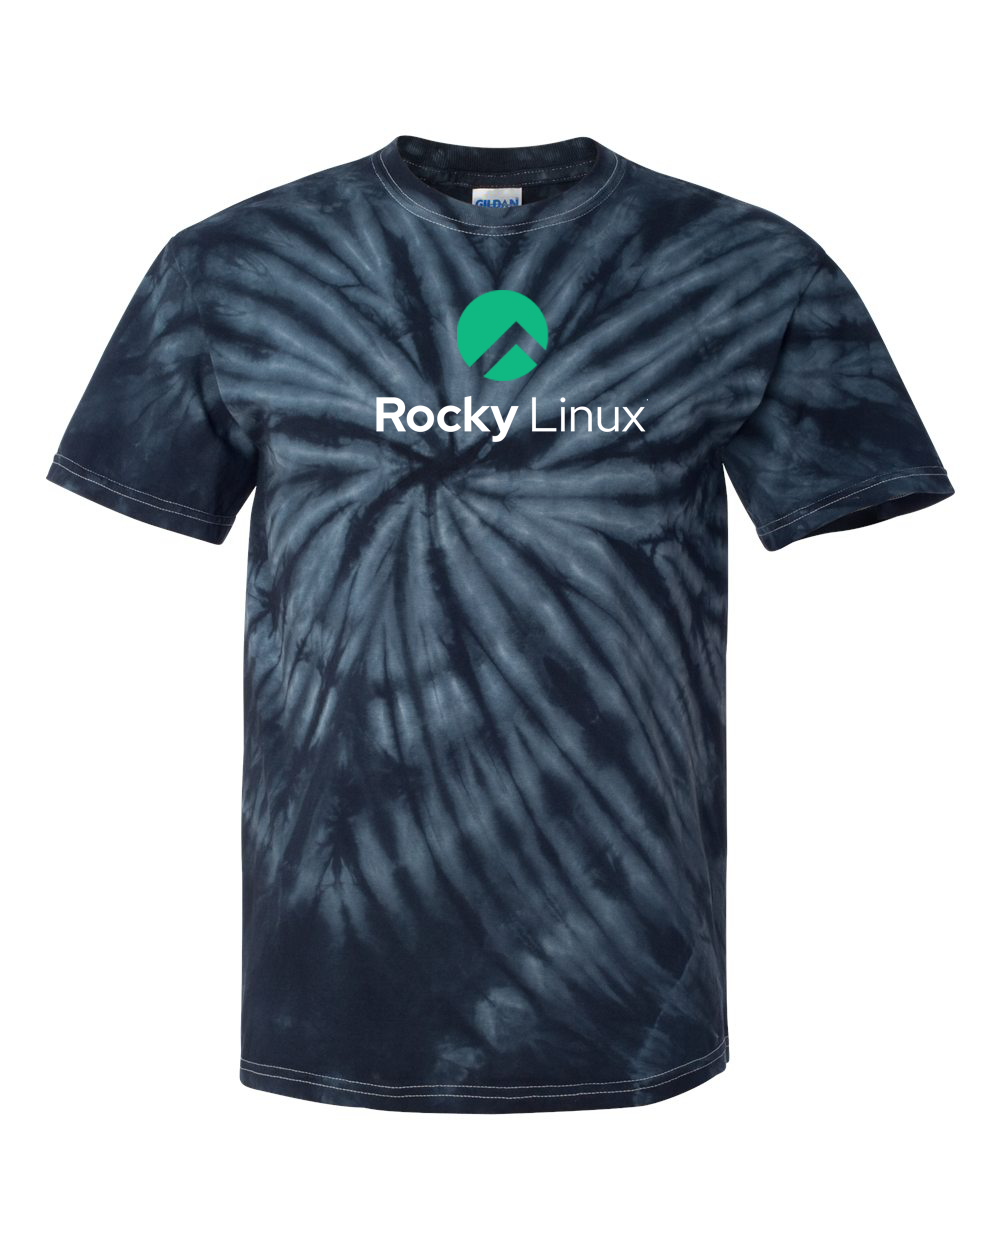 Rocky Linux Tie Dye Tee